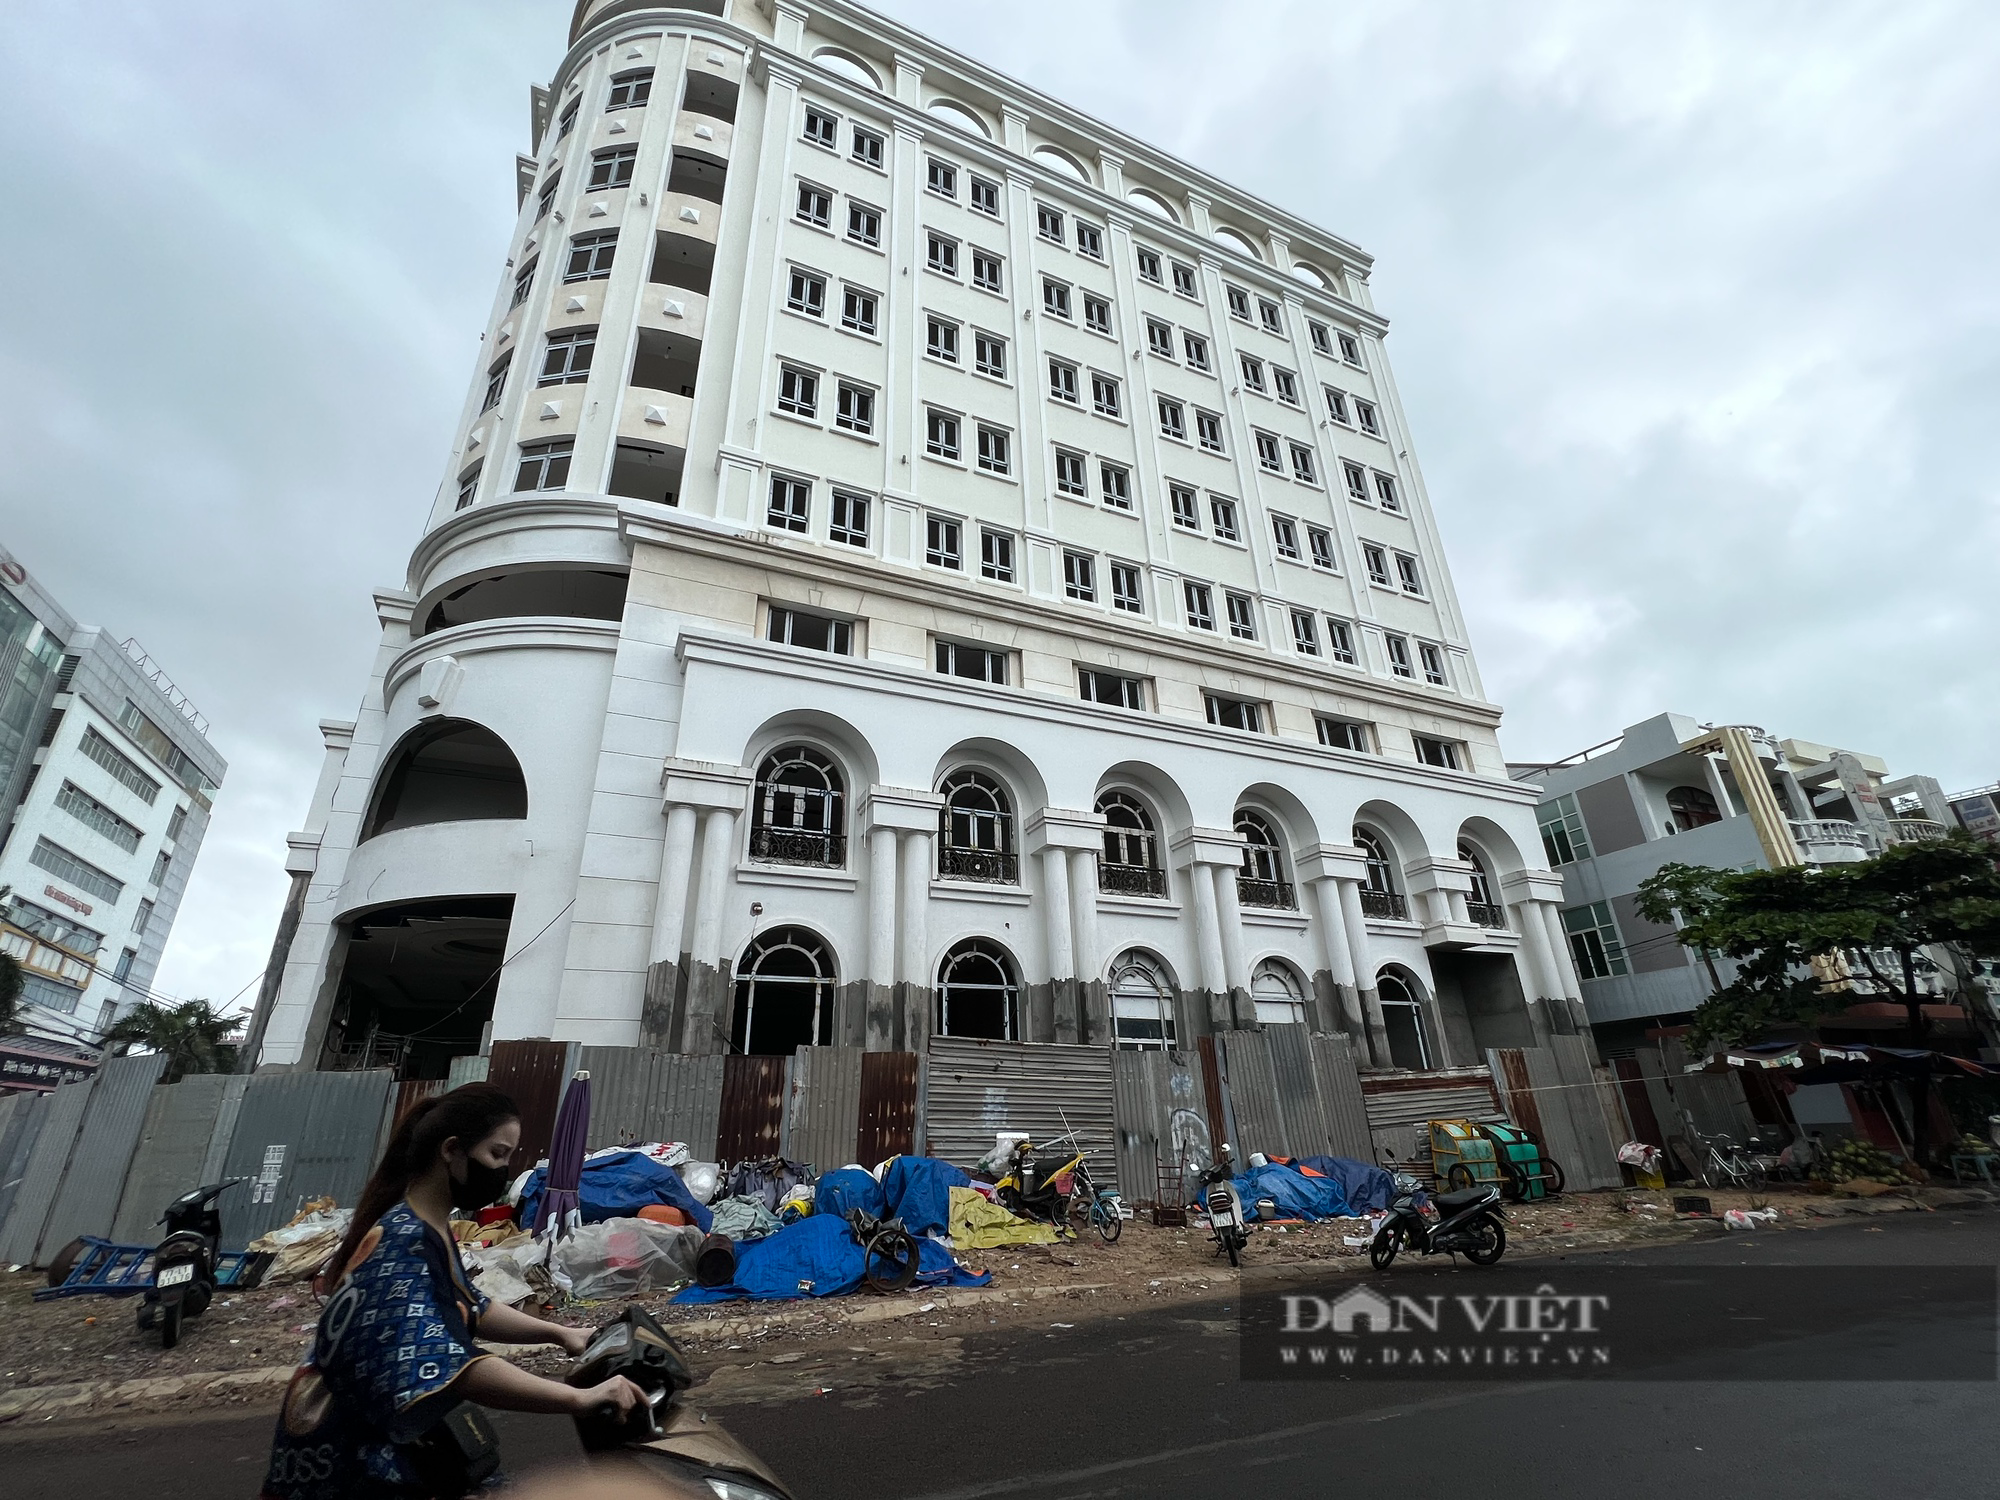 Giám đốc bị bắt, doanh nghiệp nợ thuế hơn 55 tỷ, dang dở khách sạn trên 'đất vàng' tại Bình Định - Ảnh 4.